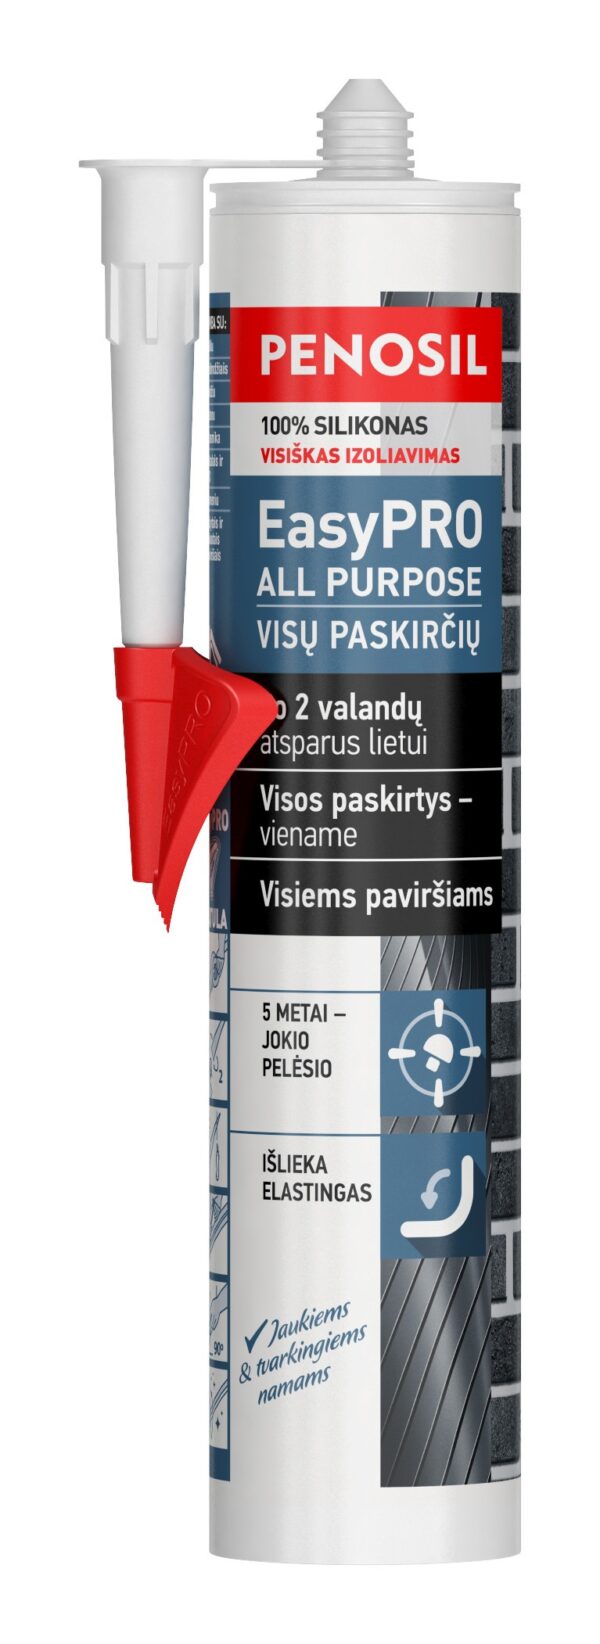 Penosil EasyPRO All Purpose universalus statybinis silikonas visiems darbams